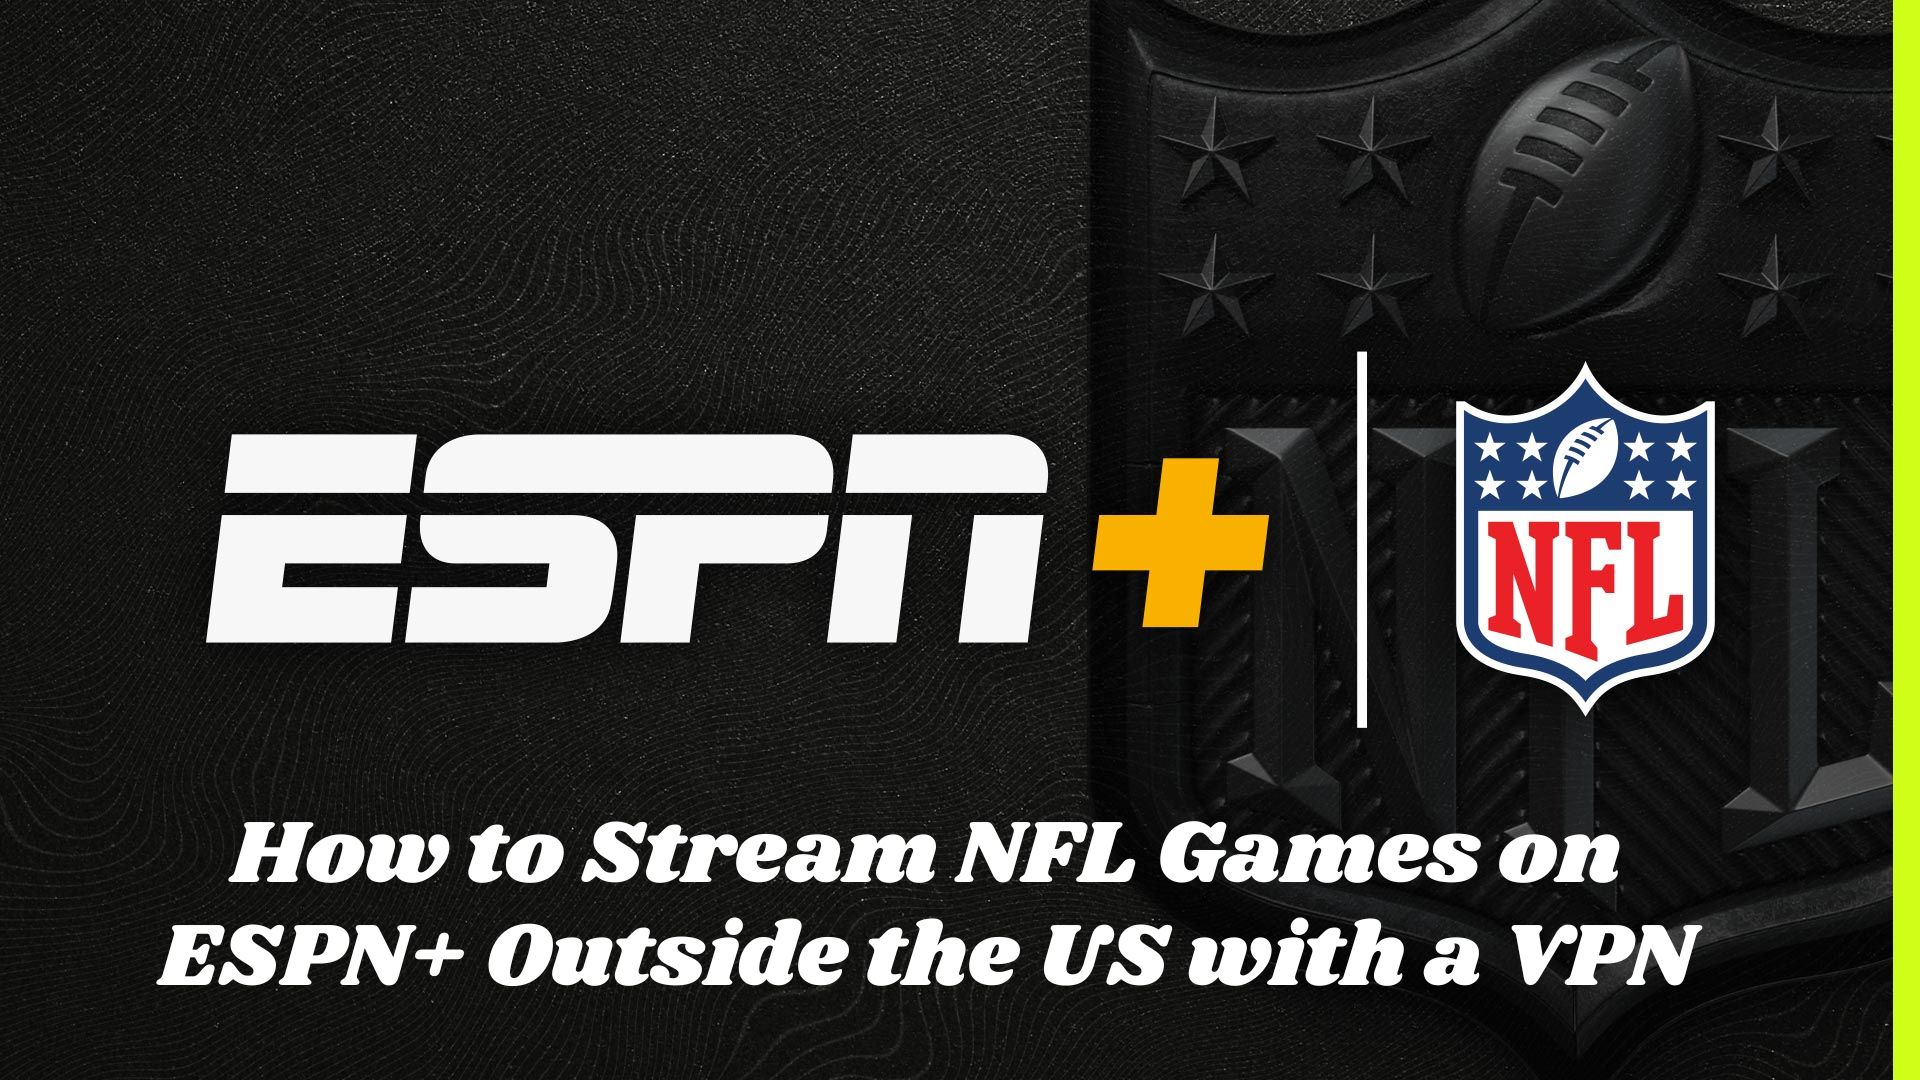 NFL live streams